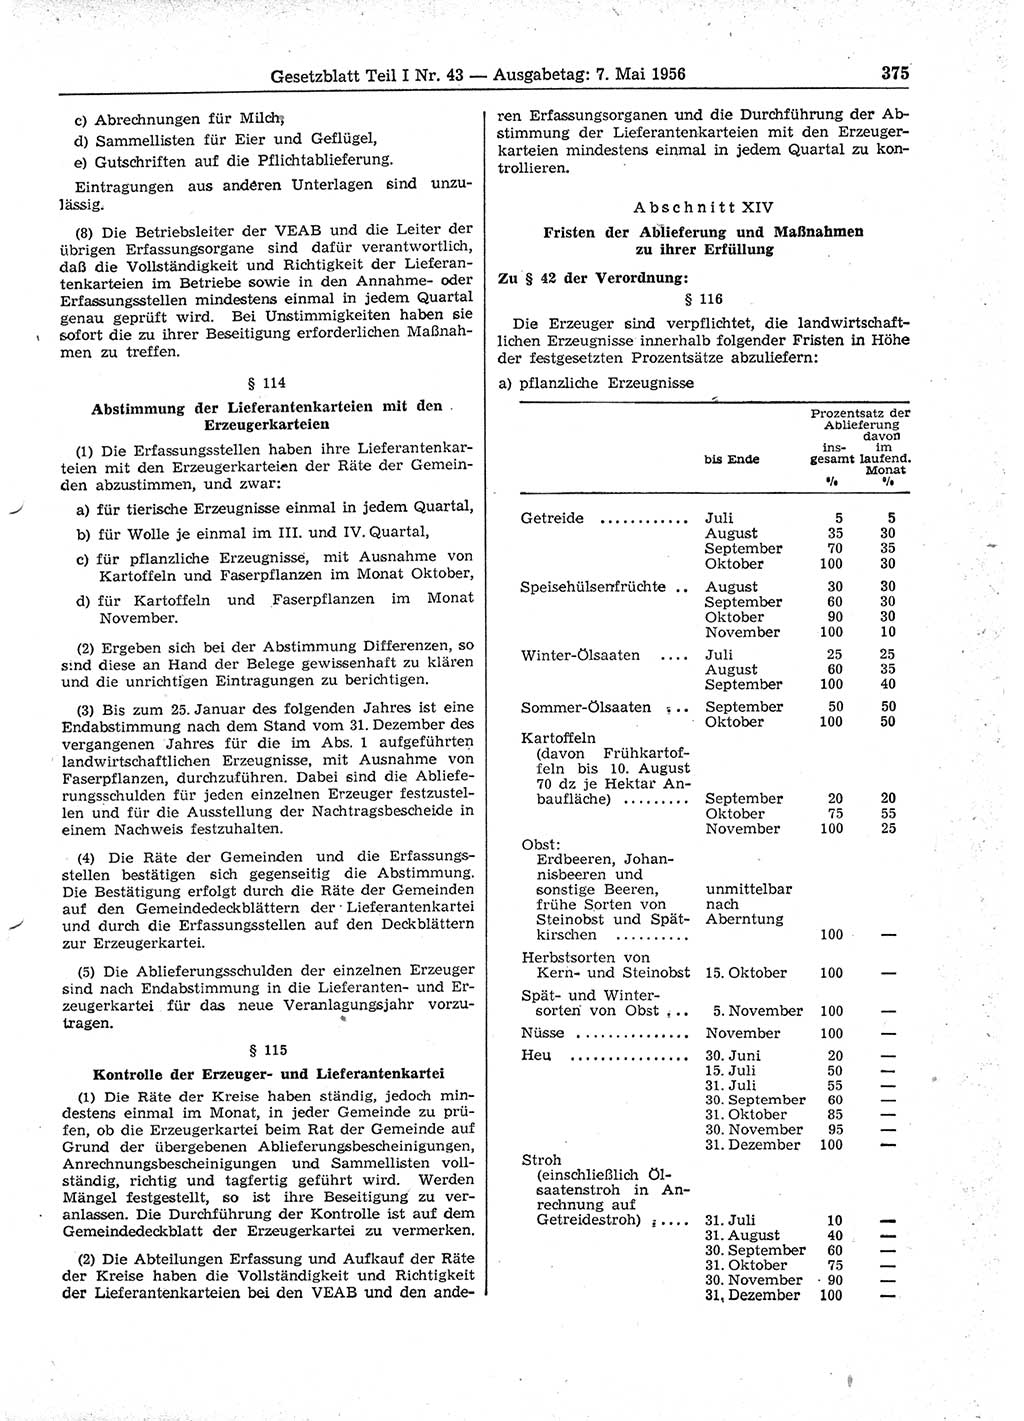 Gesetzblatt (GBl.) der Deutschen Demokratischen Republik (DDR) Teil Ⅰ 1956, Seite 375 (GBl. DDR Ⅰ 1956, S. 375)